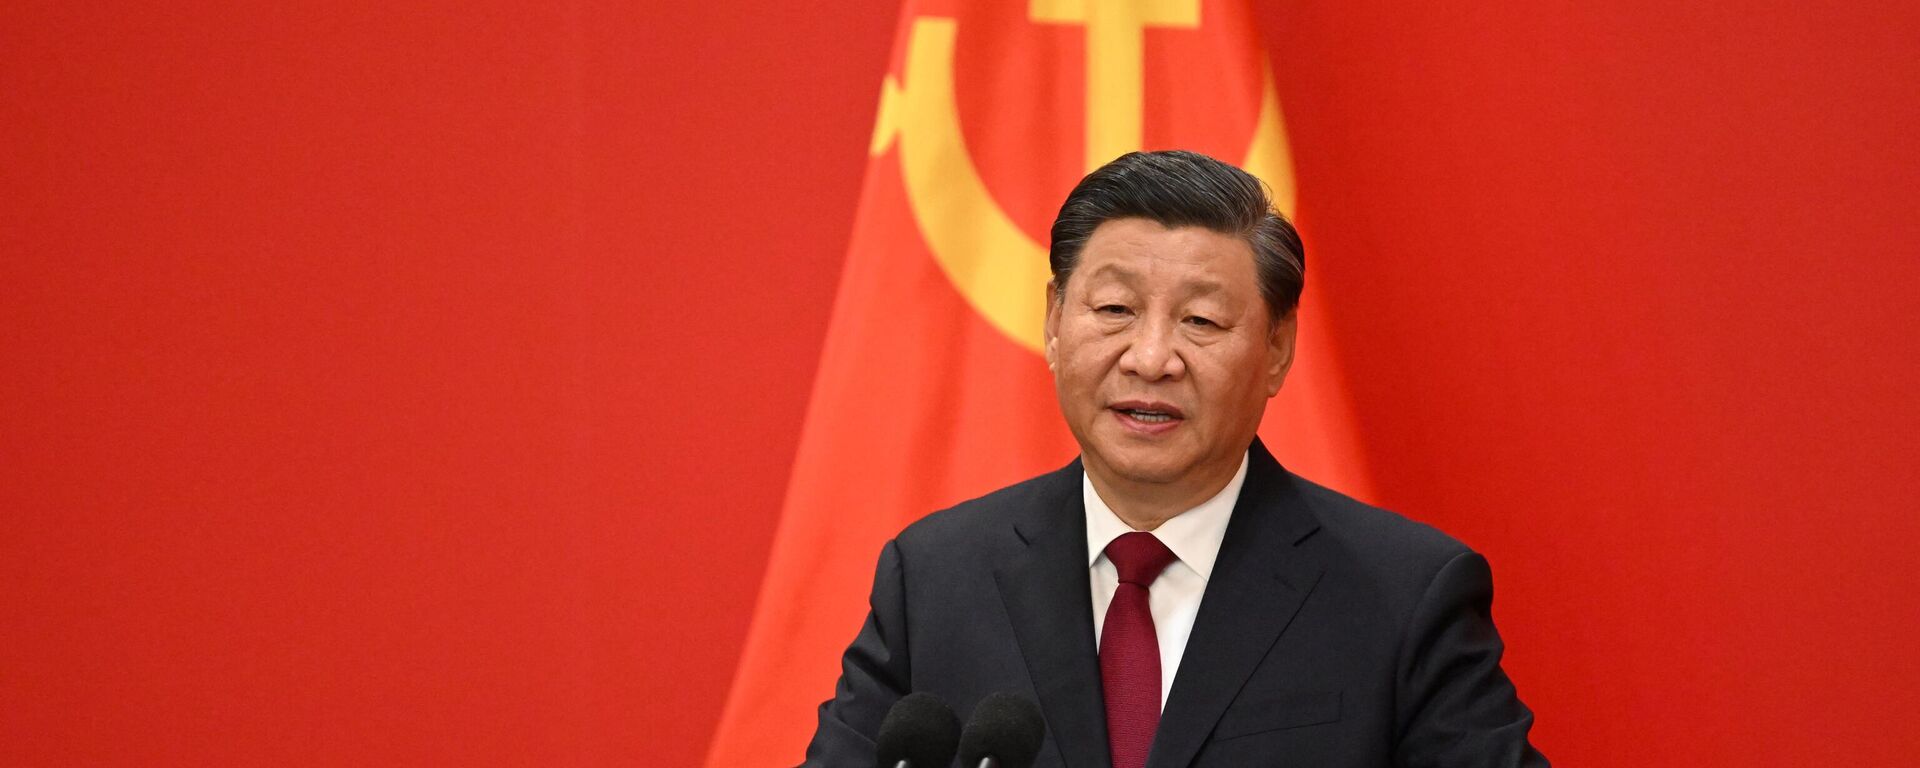 El presidente de China, Xi Jinping, habla durante el Comité Permanente del Politburó del Partido Comunista Chino, el 23 de octubre de 2022.  - Sputnik Mundo, 1920, 24.02.2023